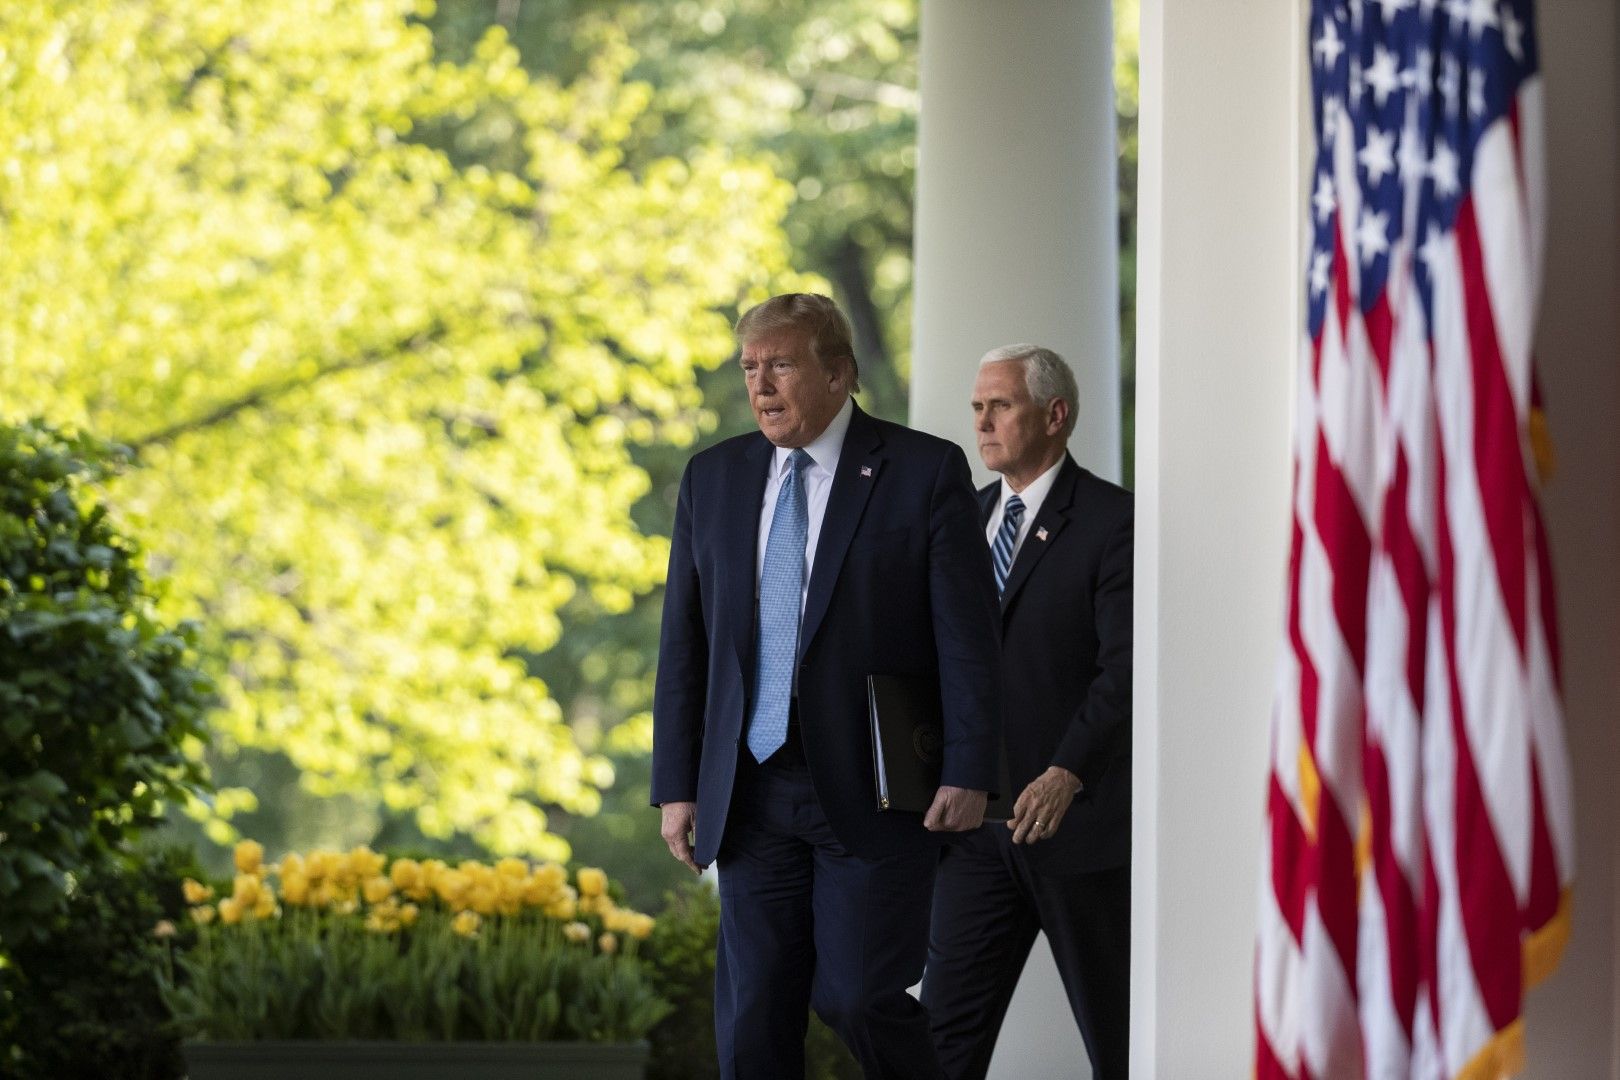 Доналд Тръмп и Майк Пенс се отправят към мястото за пресконференции в Розовата градина на Белия дом